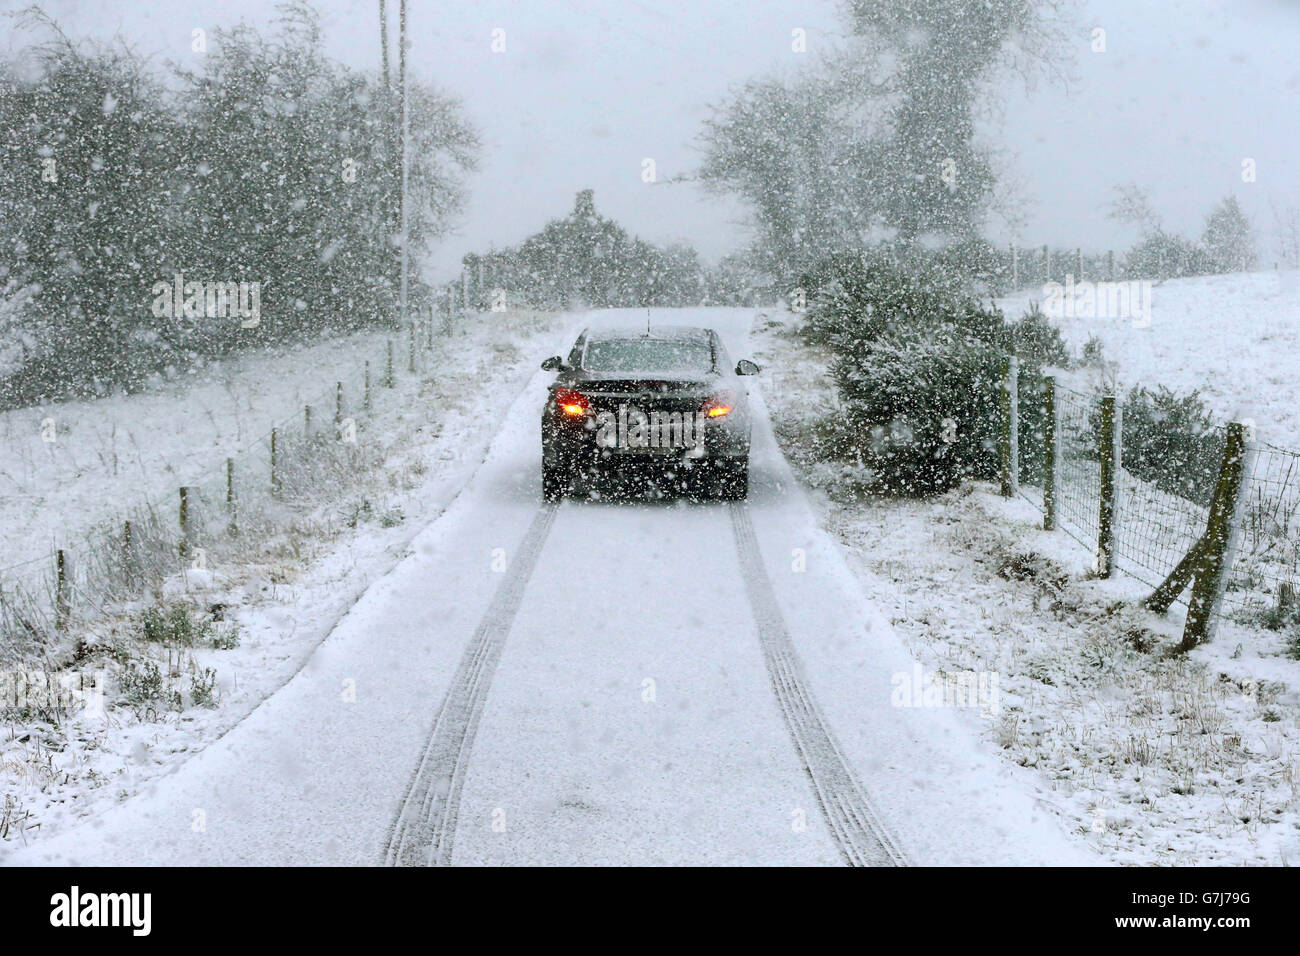 Les automobilistes traversent les chutes de neige à Gortin près d'Omagh, car de nombreuses régions du Royaume-Uni étaient en alerte de neige et des averses de pluie menaçaient de perturber leurs déplacements. Banque D'Images